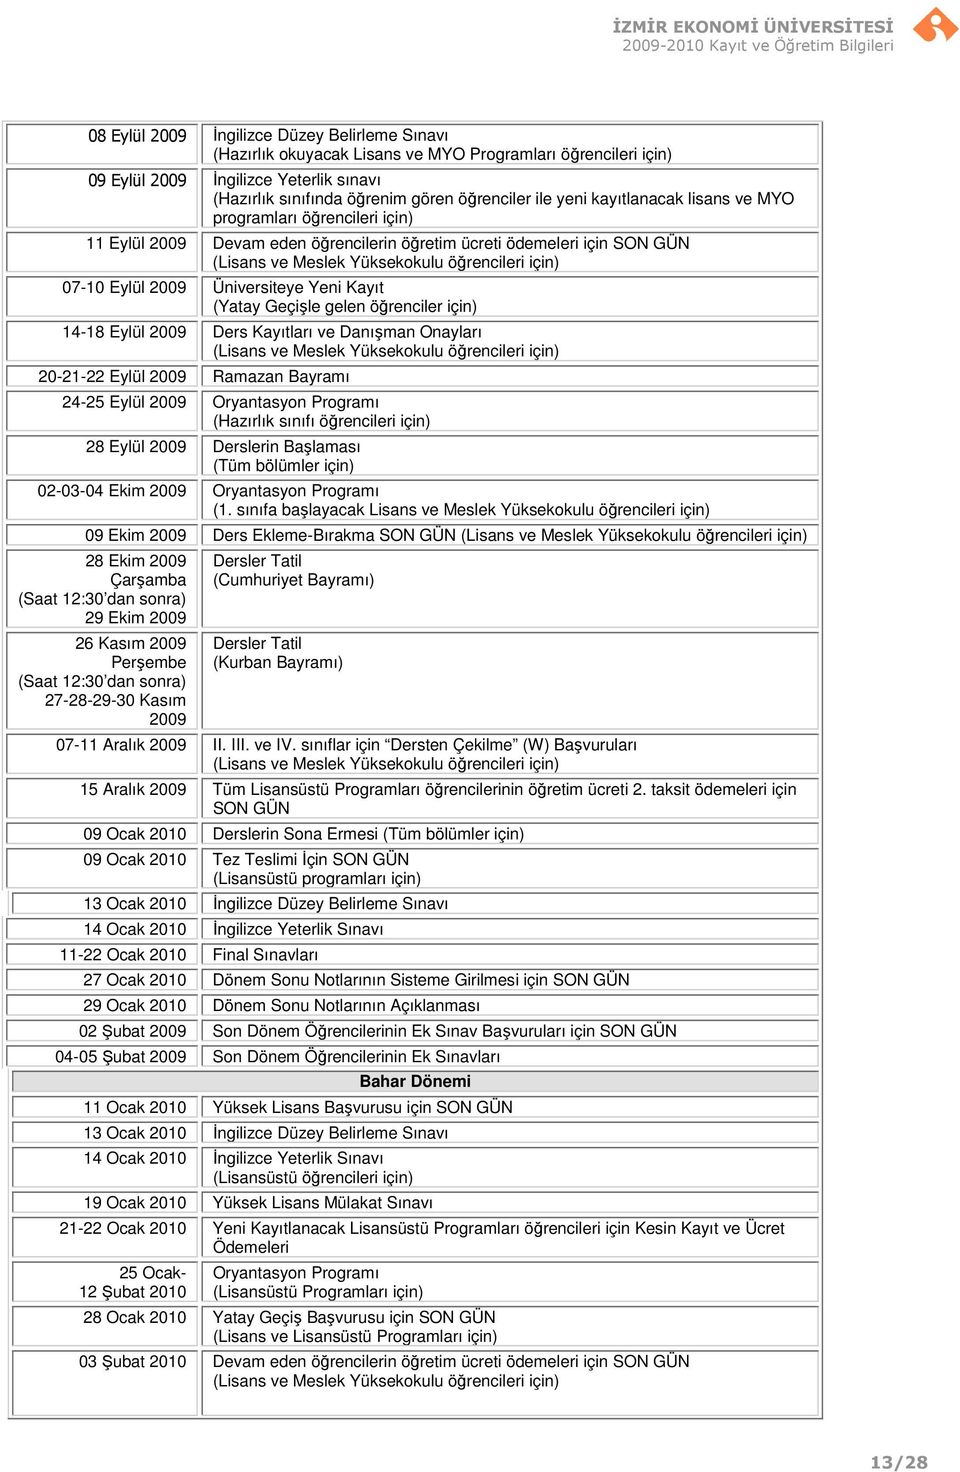 2009 Üniversiteye Yeni Kayıt (Yatay Geçişle gelen öğrenciler için) 14-18 Eylül 2009 Ders Kayıtları ve Danışman Onayları (Lisans ve Meslek Yüksekokulu öğrencileri için) 20-21-22 Eylül 2009 Ramazan